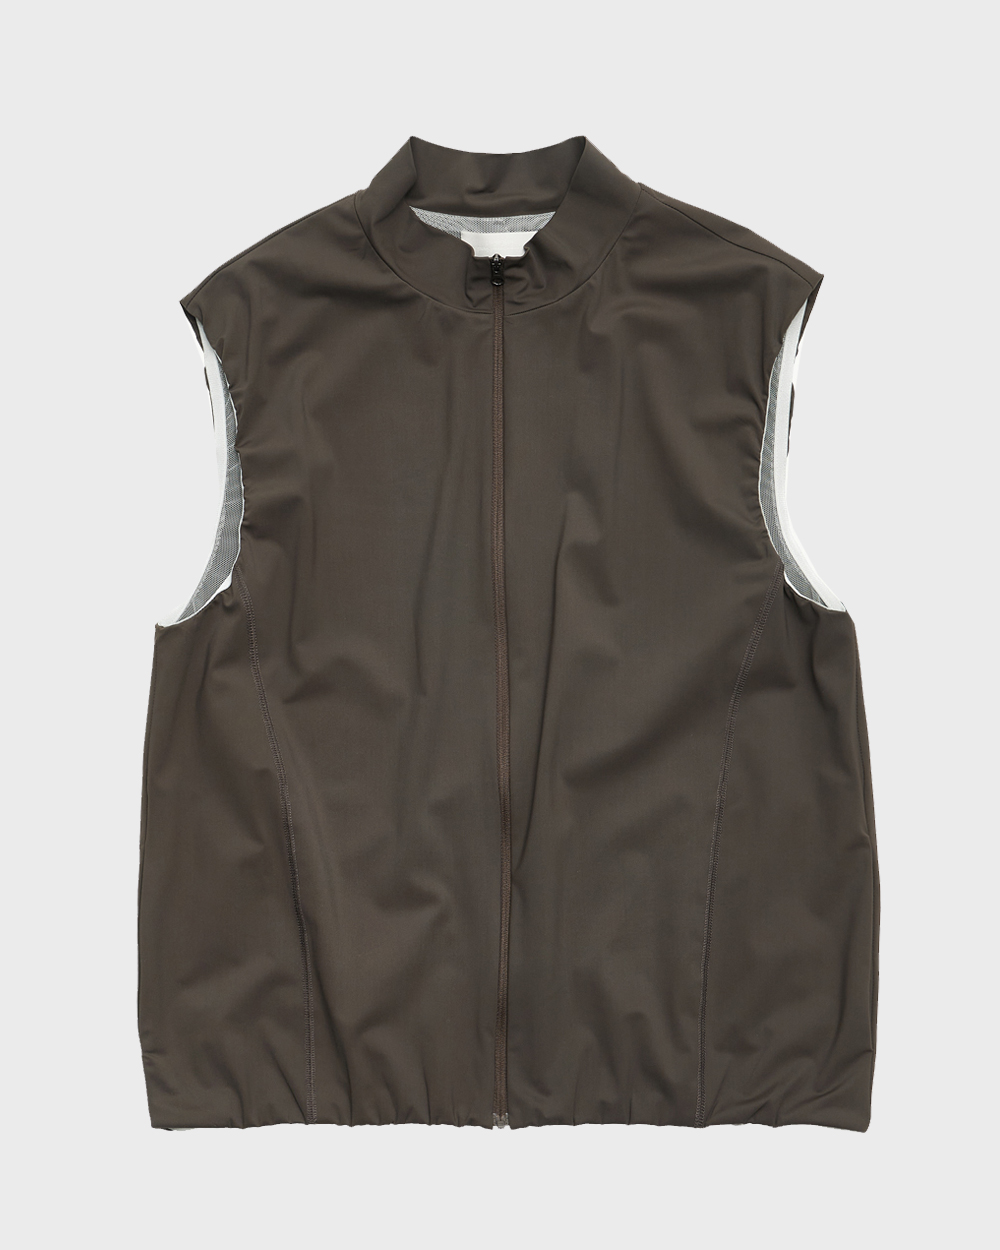 High Neck Zip-Up Vest (Brown)